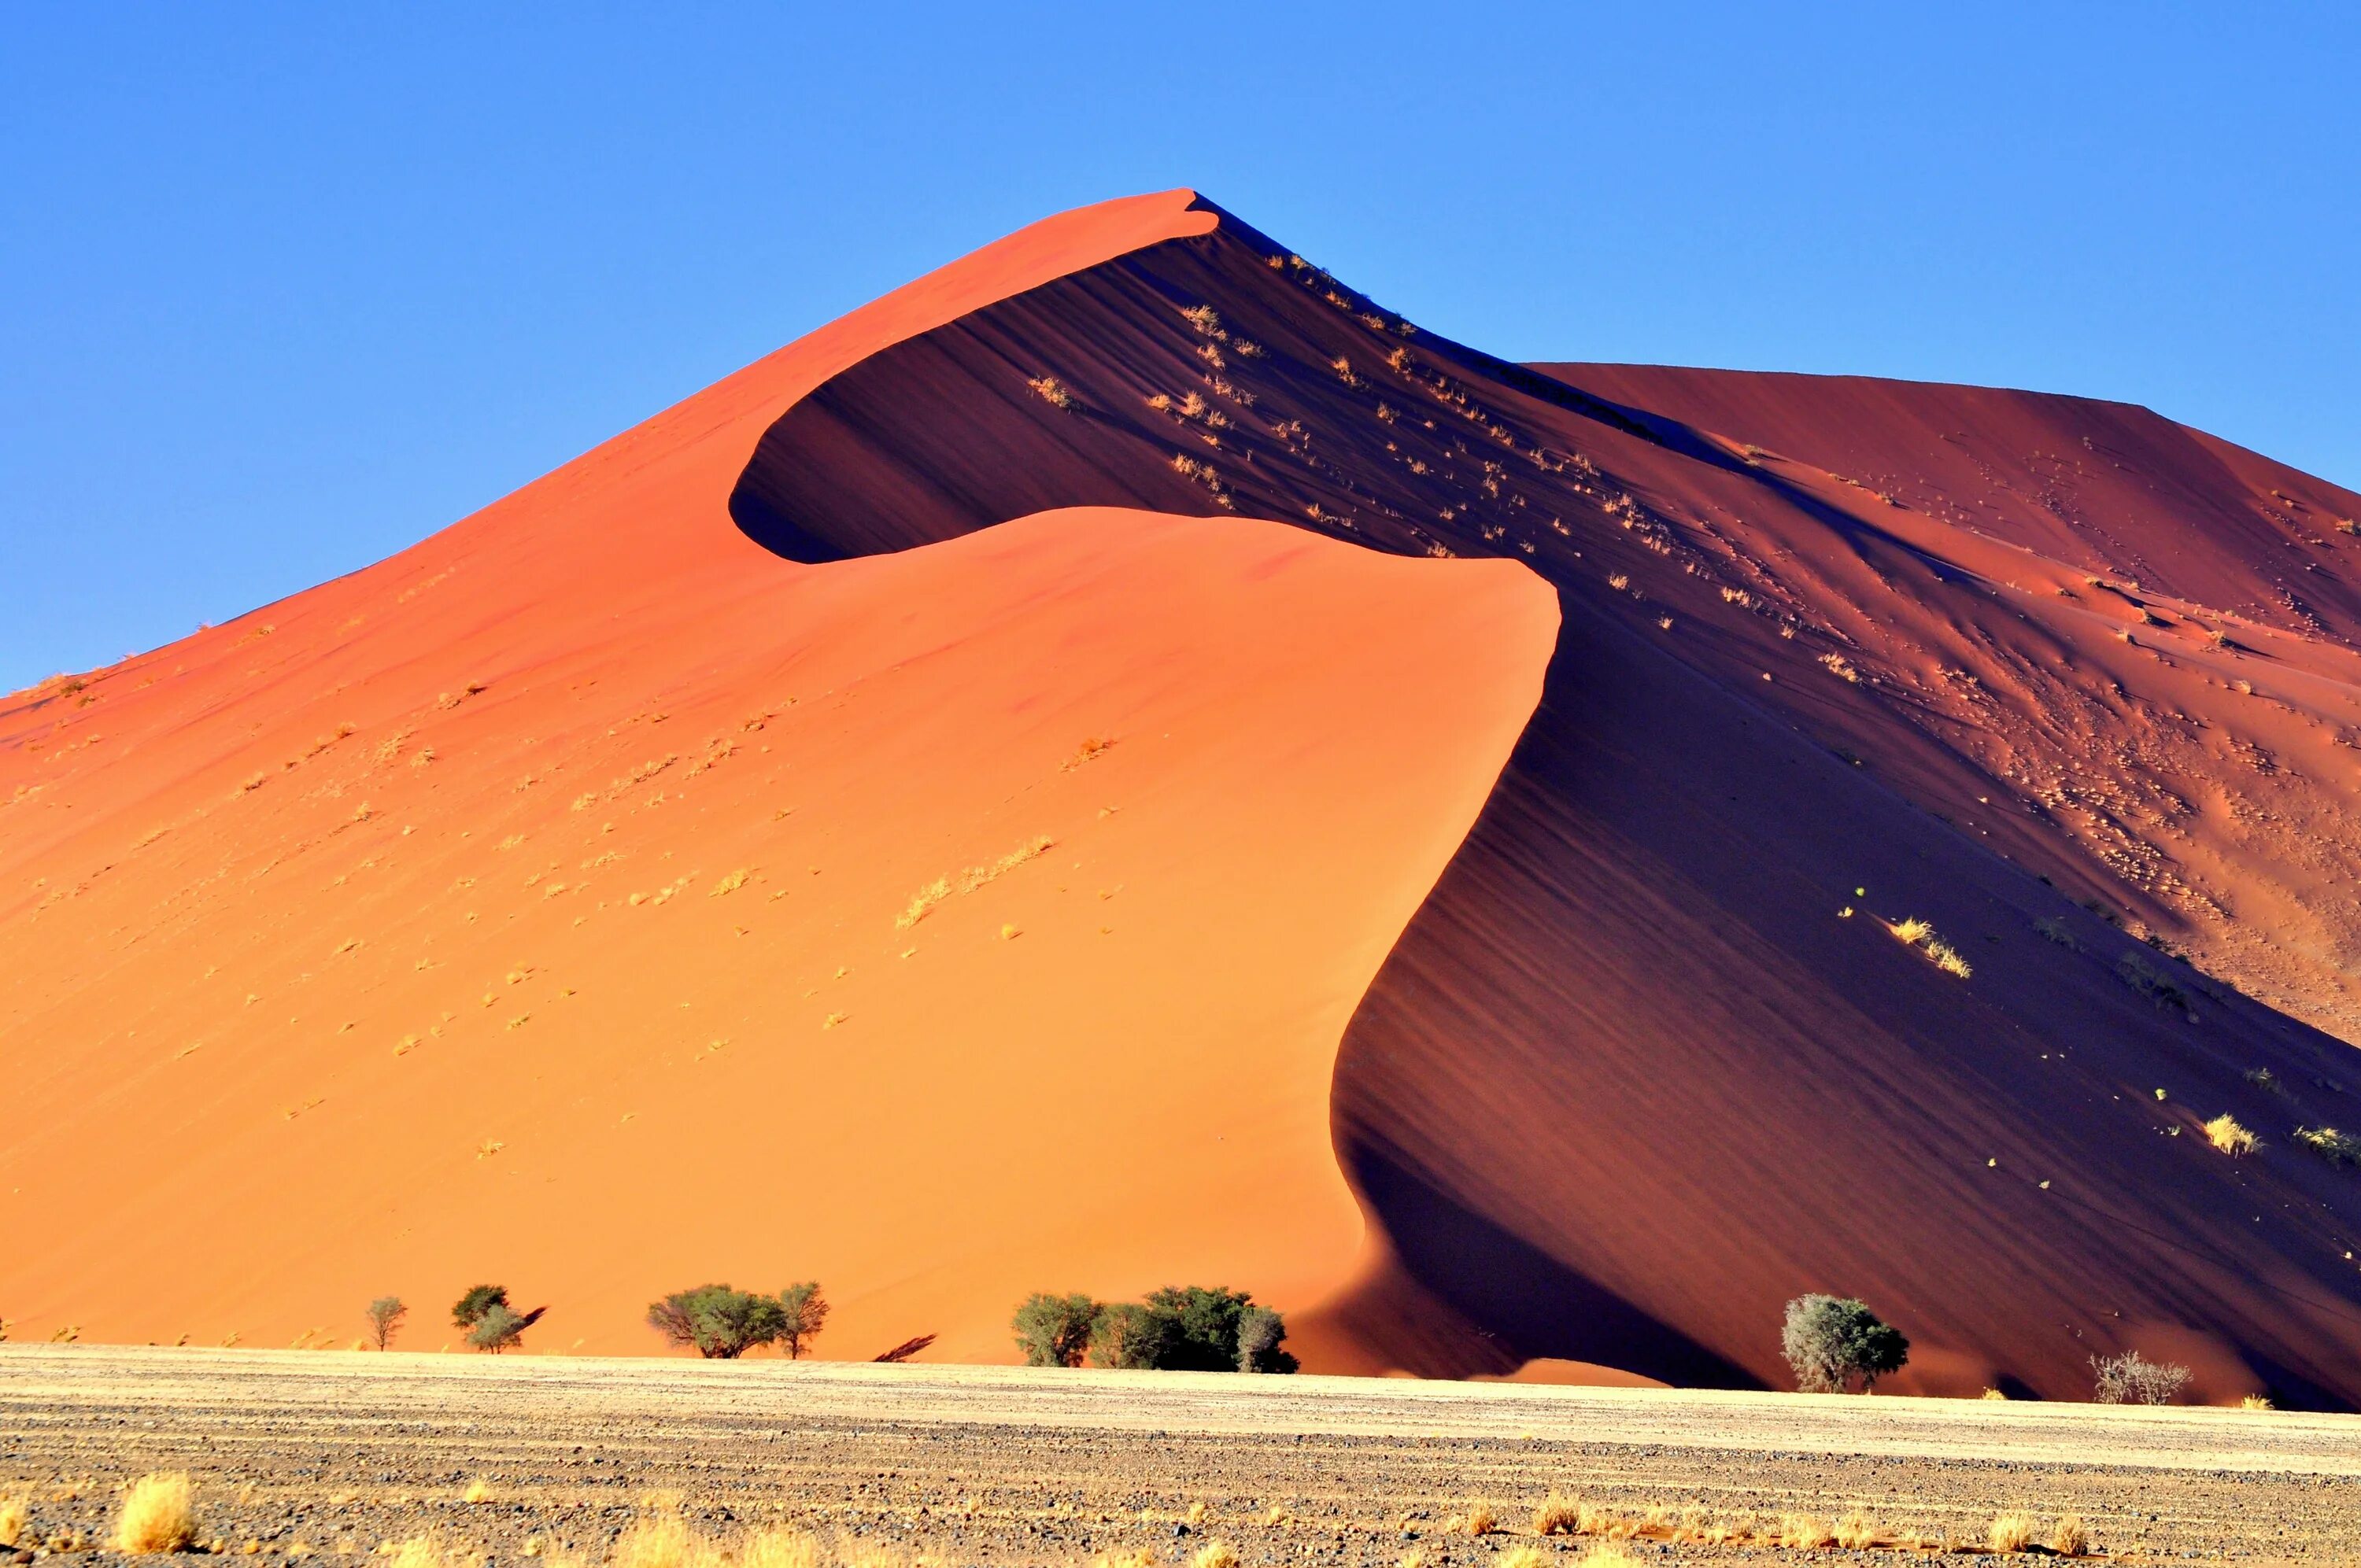 Пустыня Намиб дюны. Намибия пустыня Намиб. Дюны Соссусфлей. Соссусфлей красные дюны Намибии. Африканская столица 7